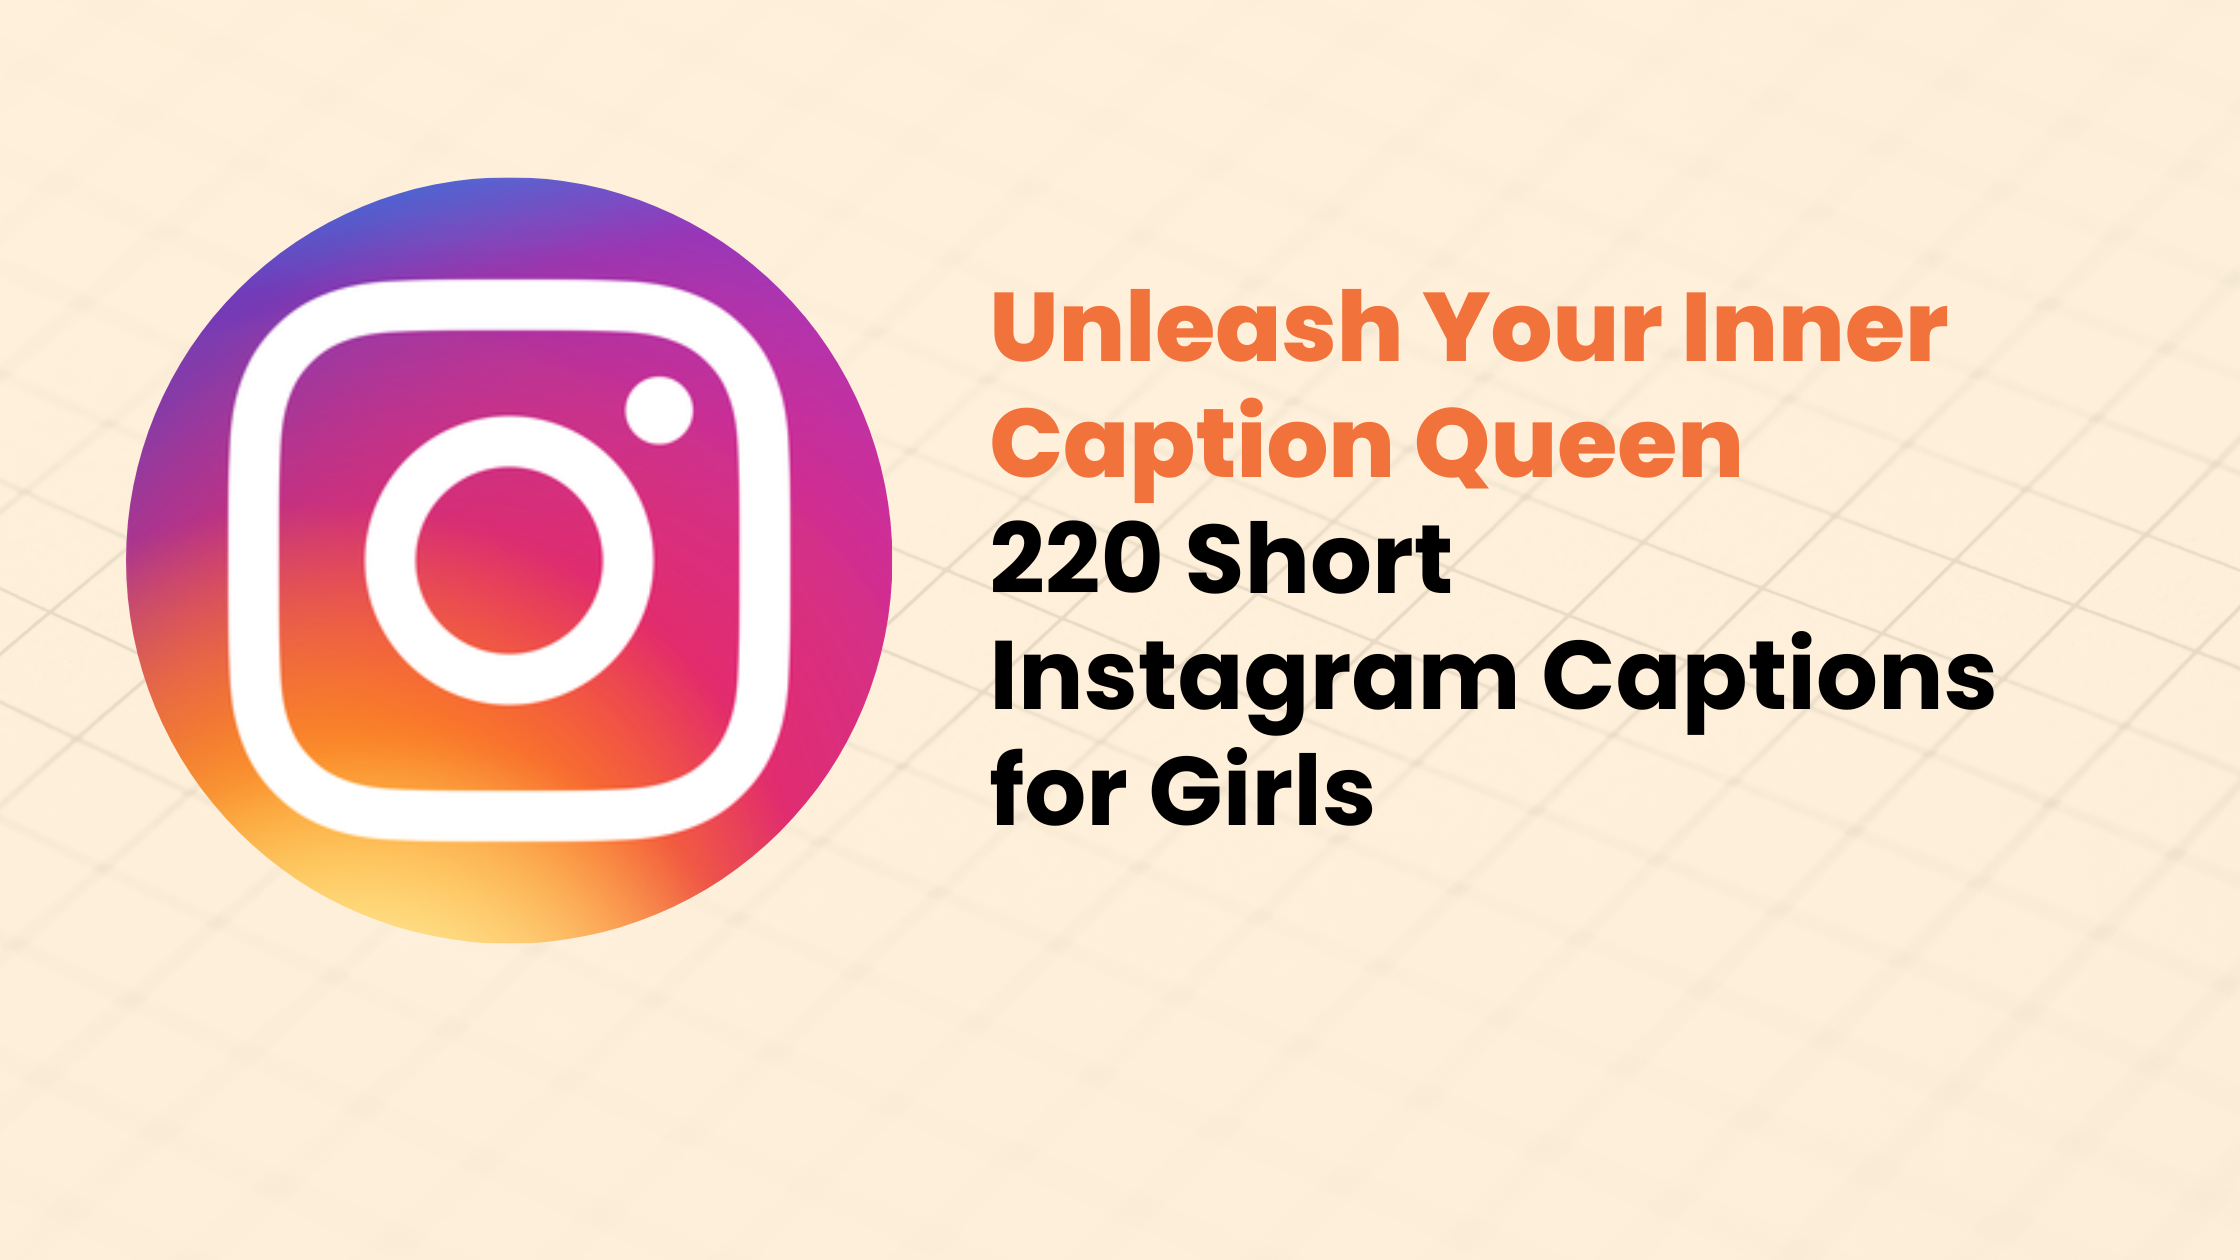 220 Short Instagram Captions for Girls: Unleash Your Inner Caption Queen